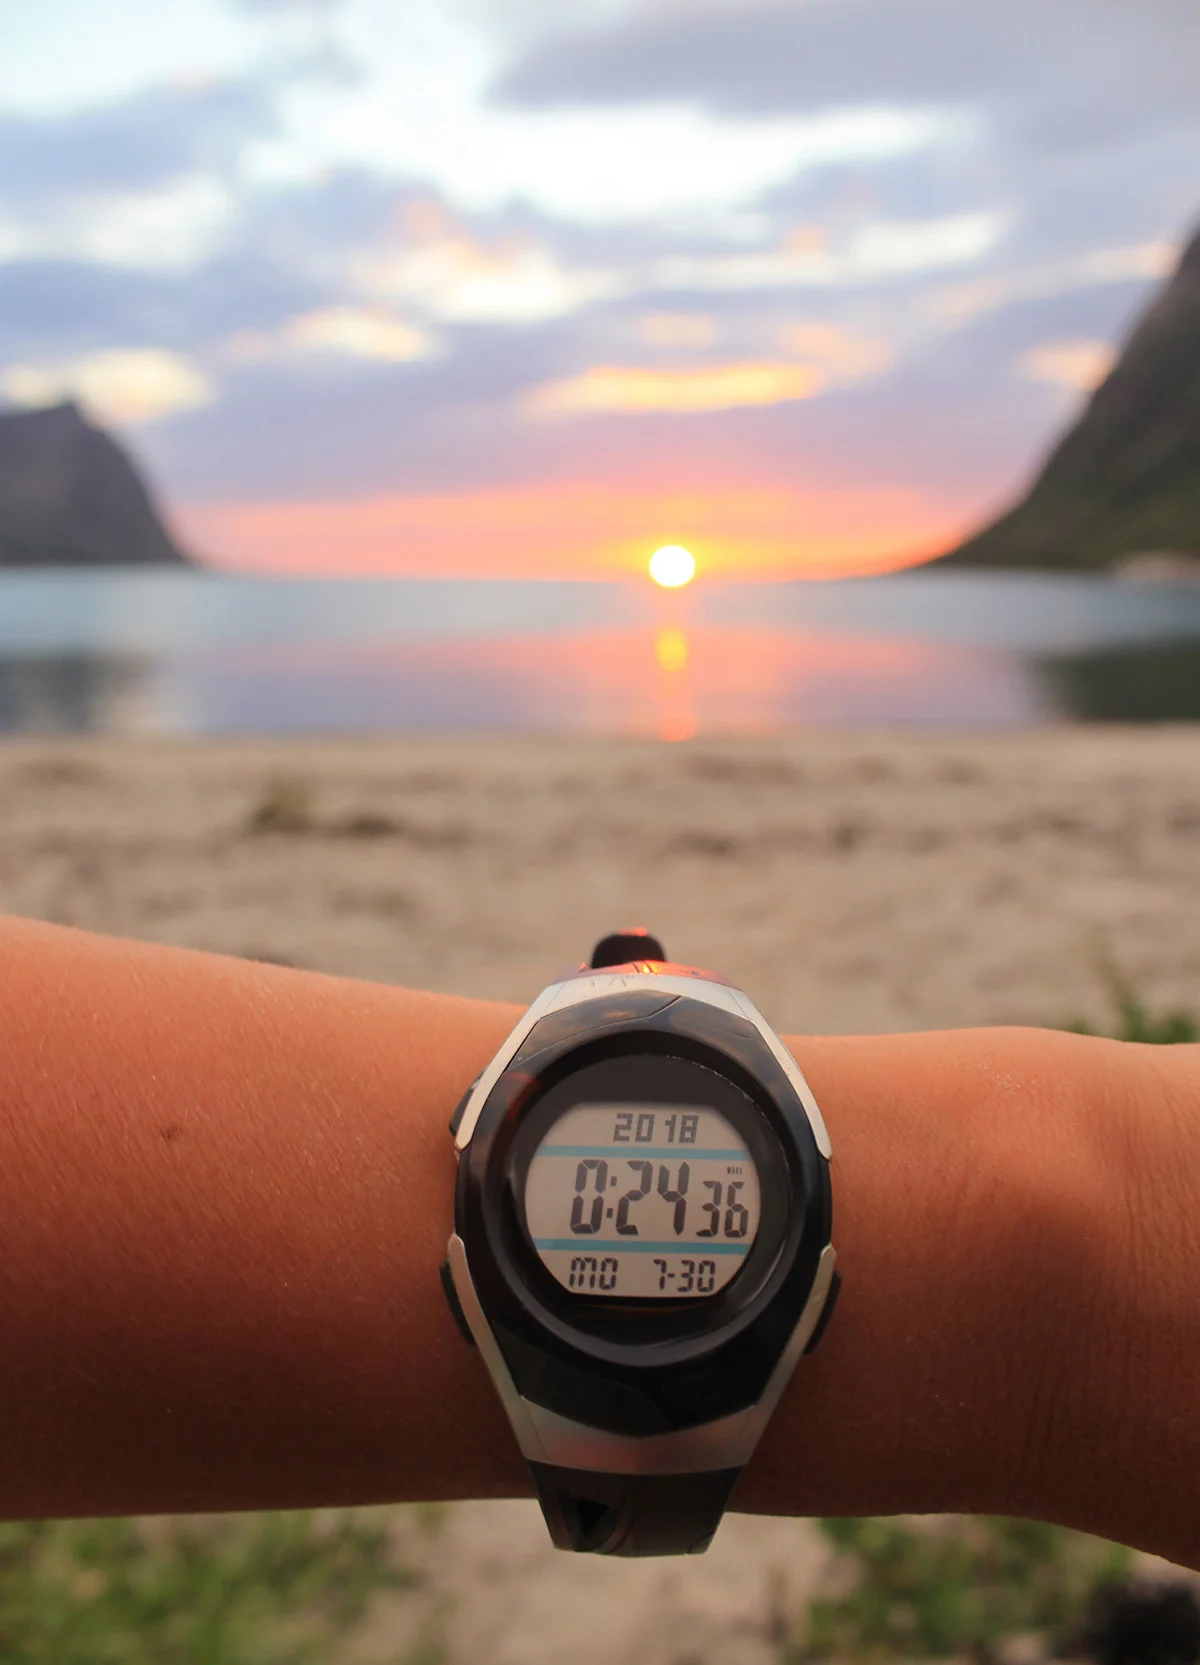 Midnight sun wristwatch in Norway